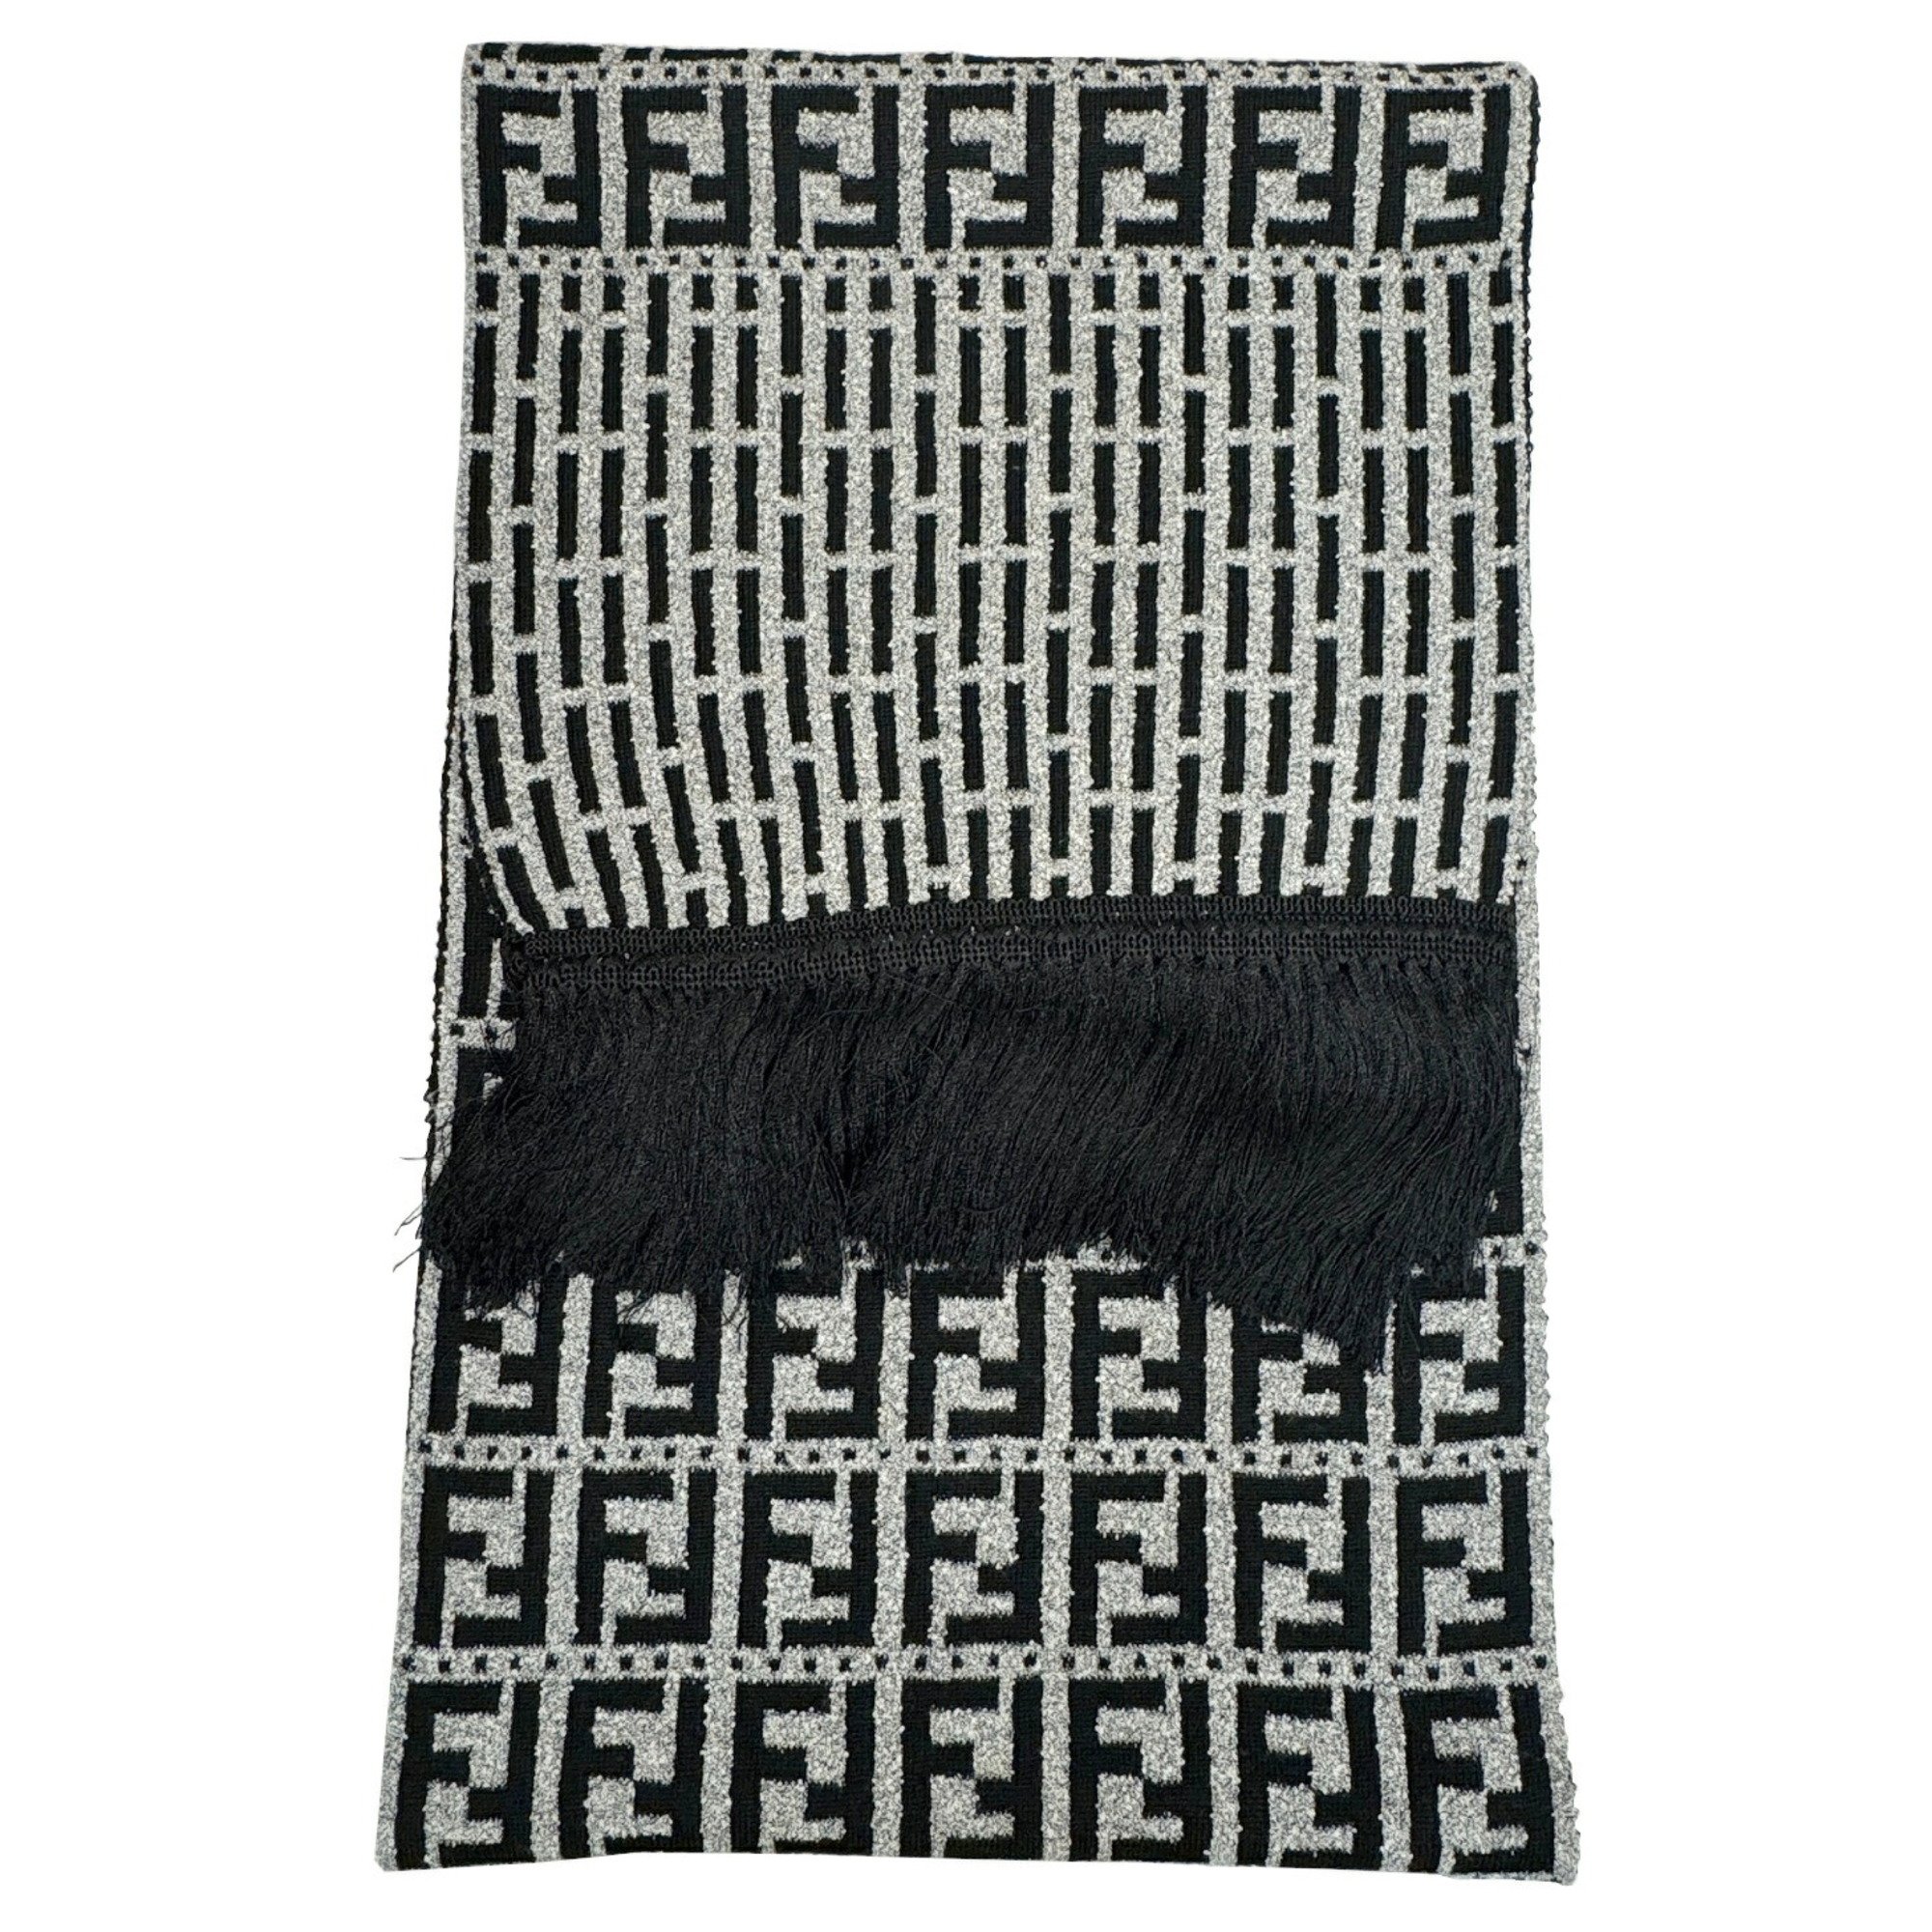 FENDI Zucca pattern FF muffler wool gray black men's women's